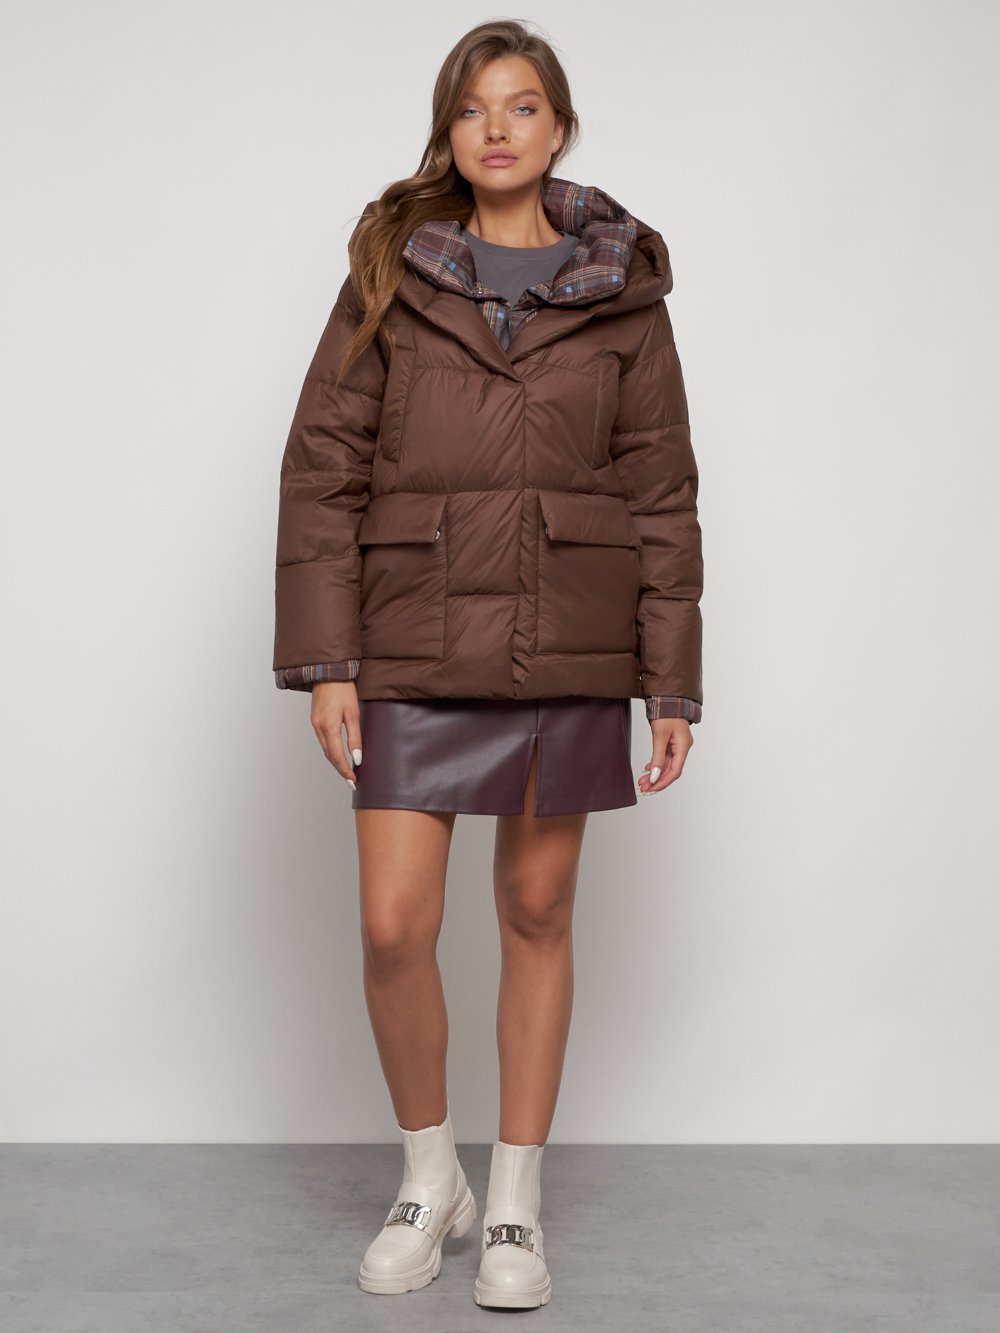 Купить куртку женскую зимнюю оптом от производителя недорого в Москве 133105K